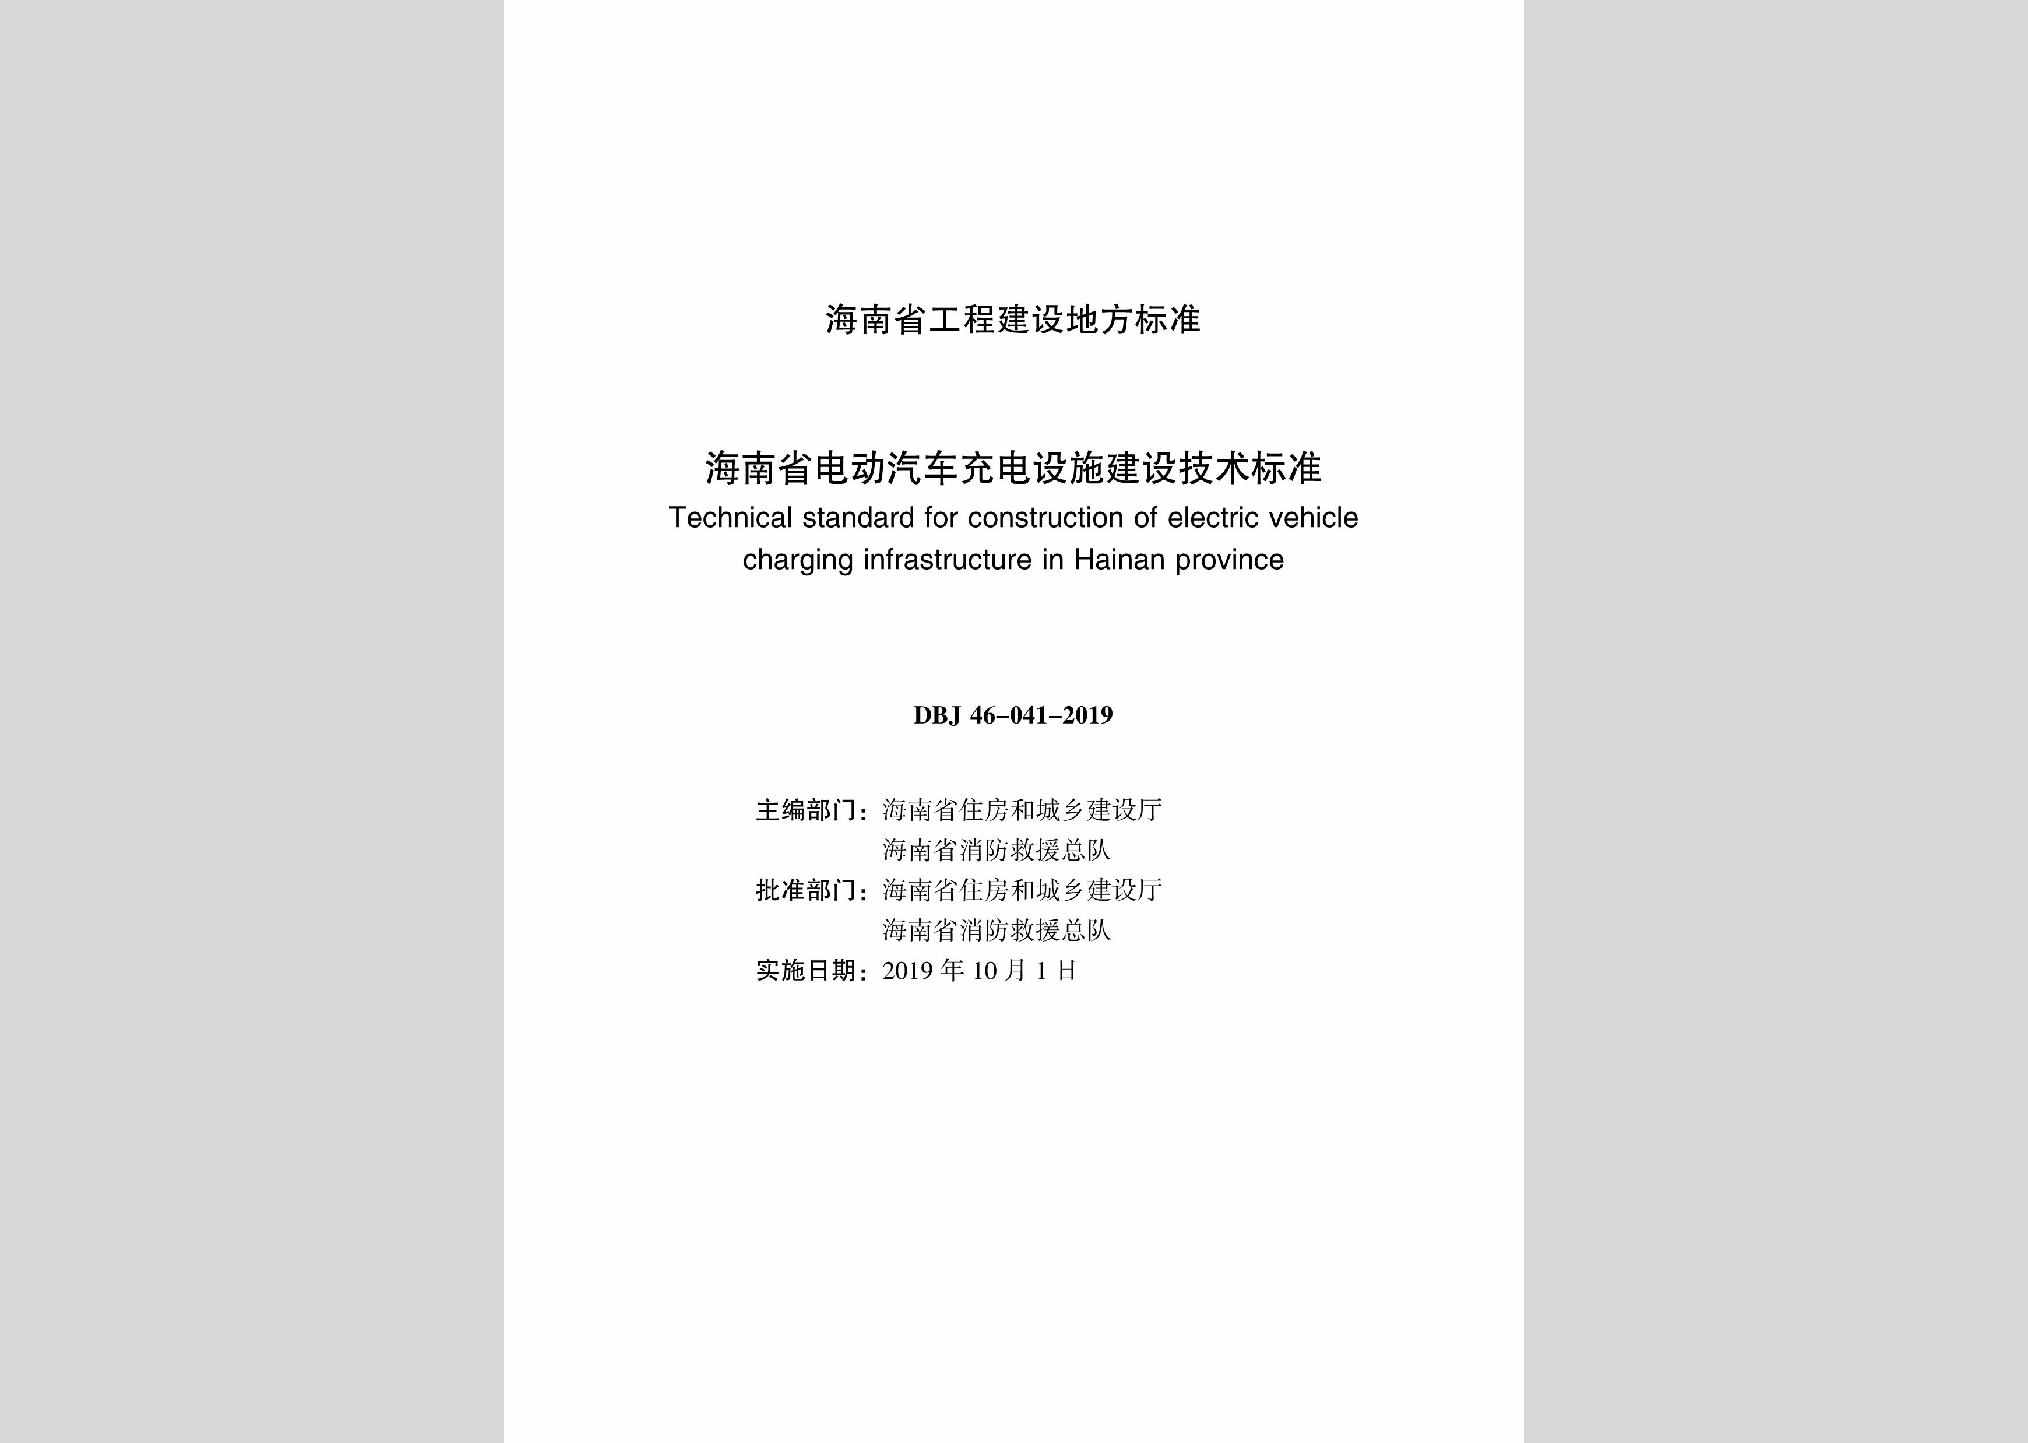 DBJ46-041-2019：海南省电动汽车充电设施建设技术标准